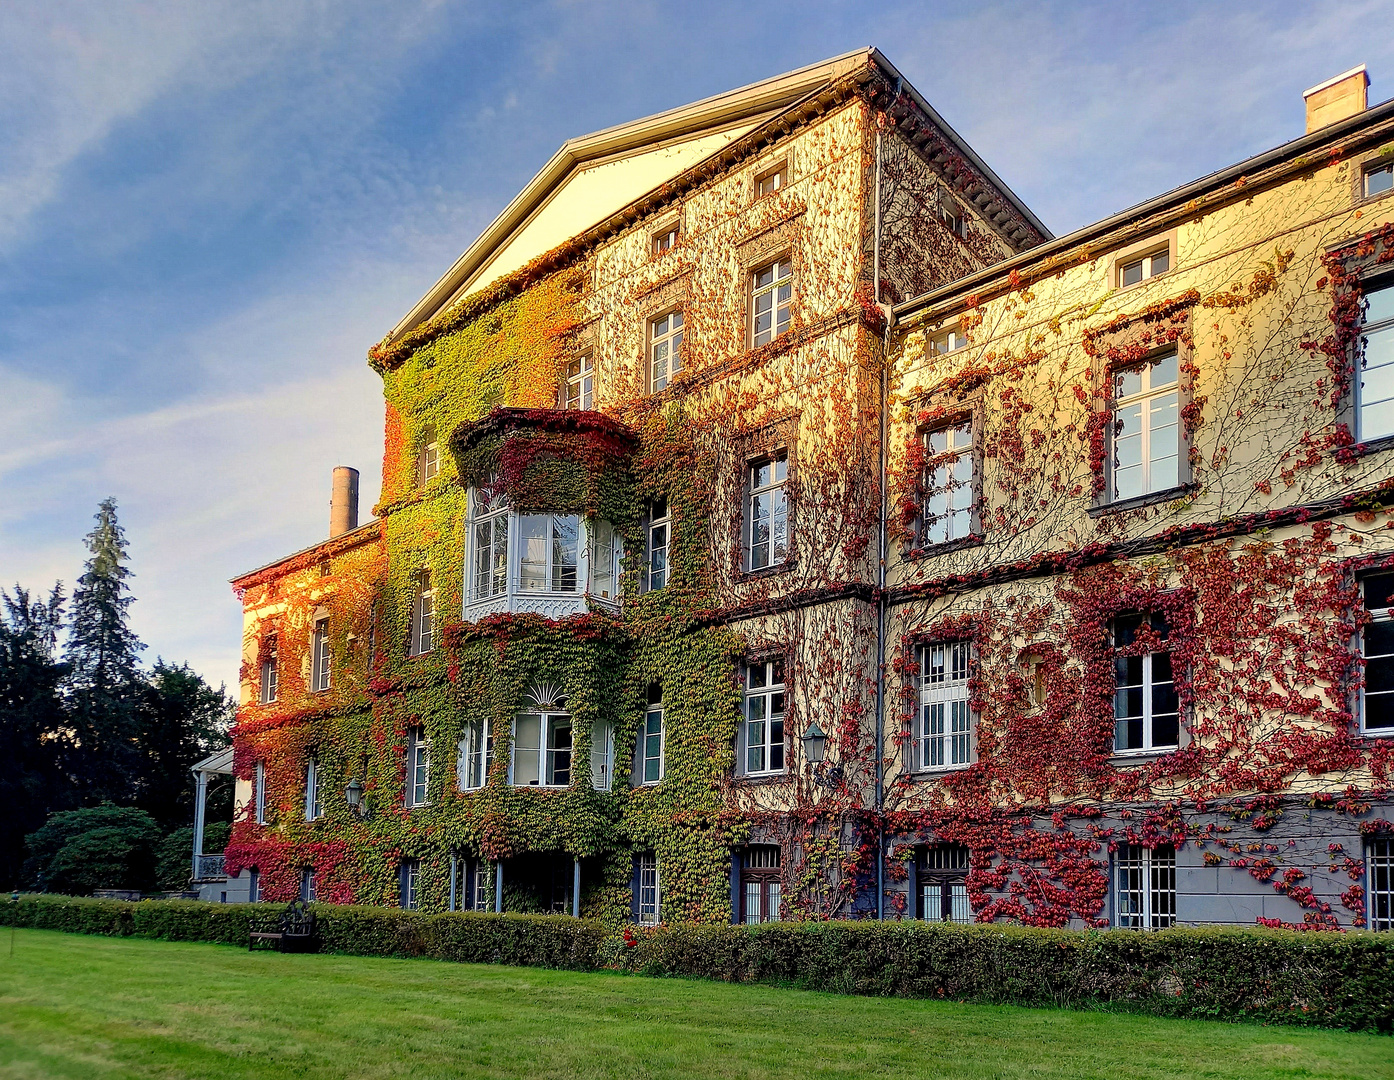 Villa Braunswerth in Engelskirchen